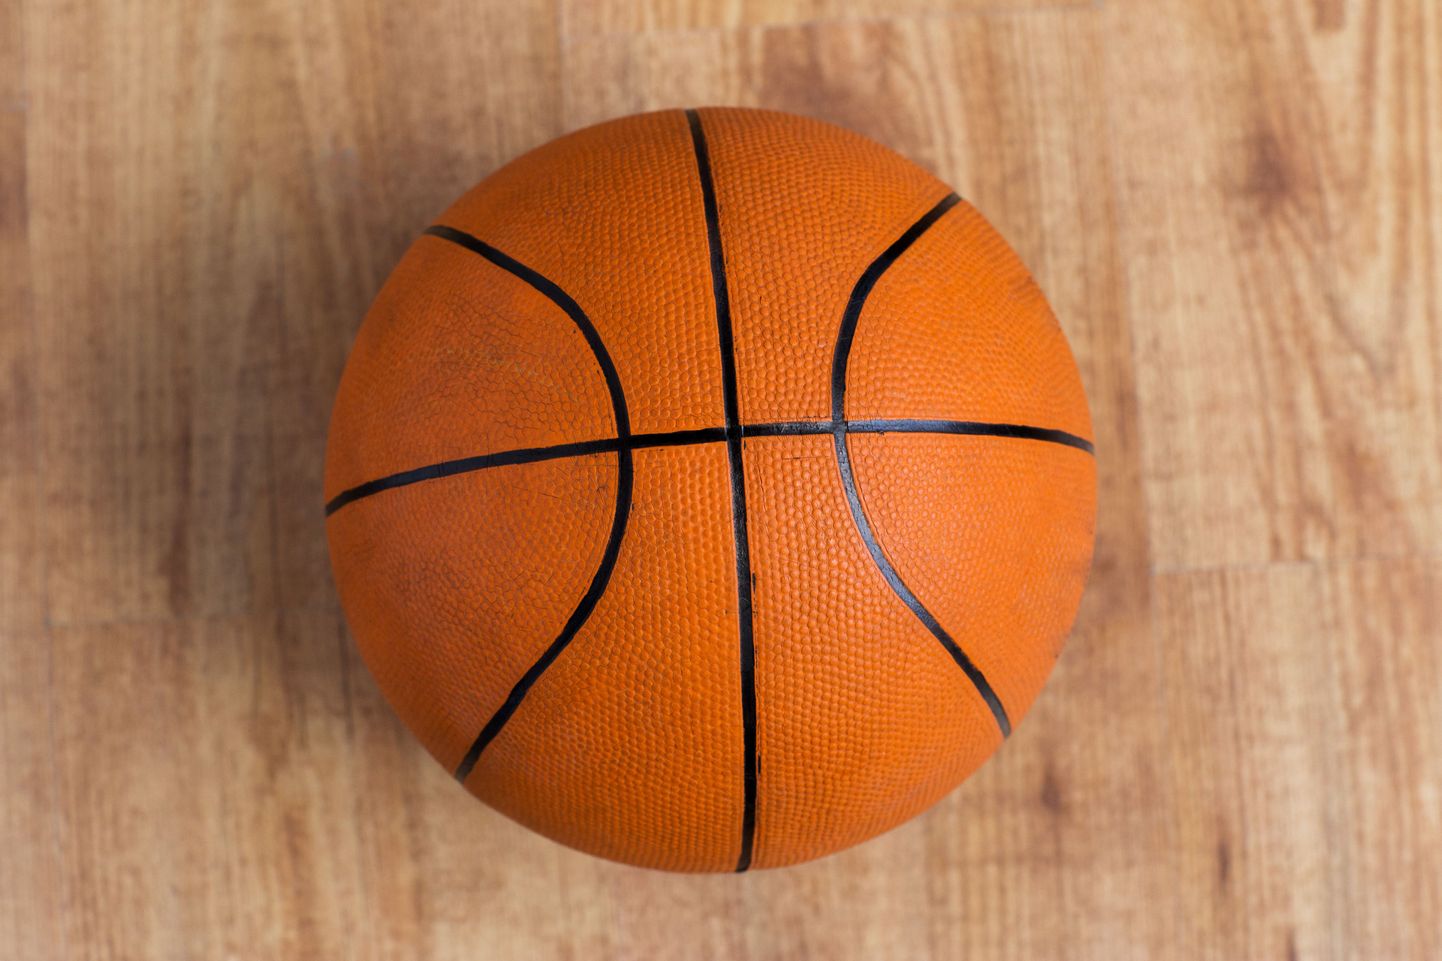 Баскетбольный мяч. Иллюстративное фото.